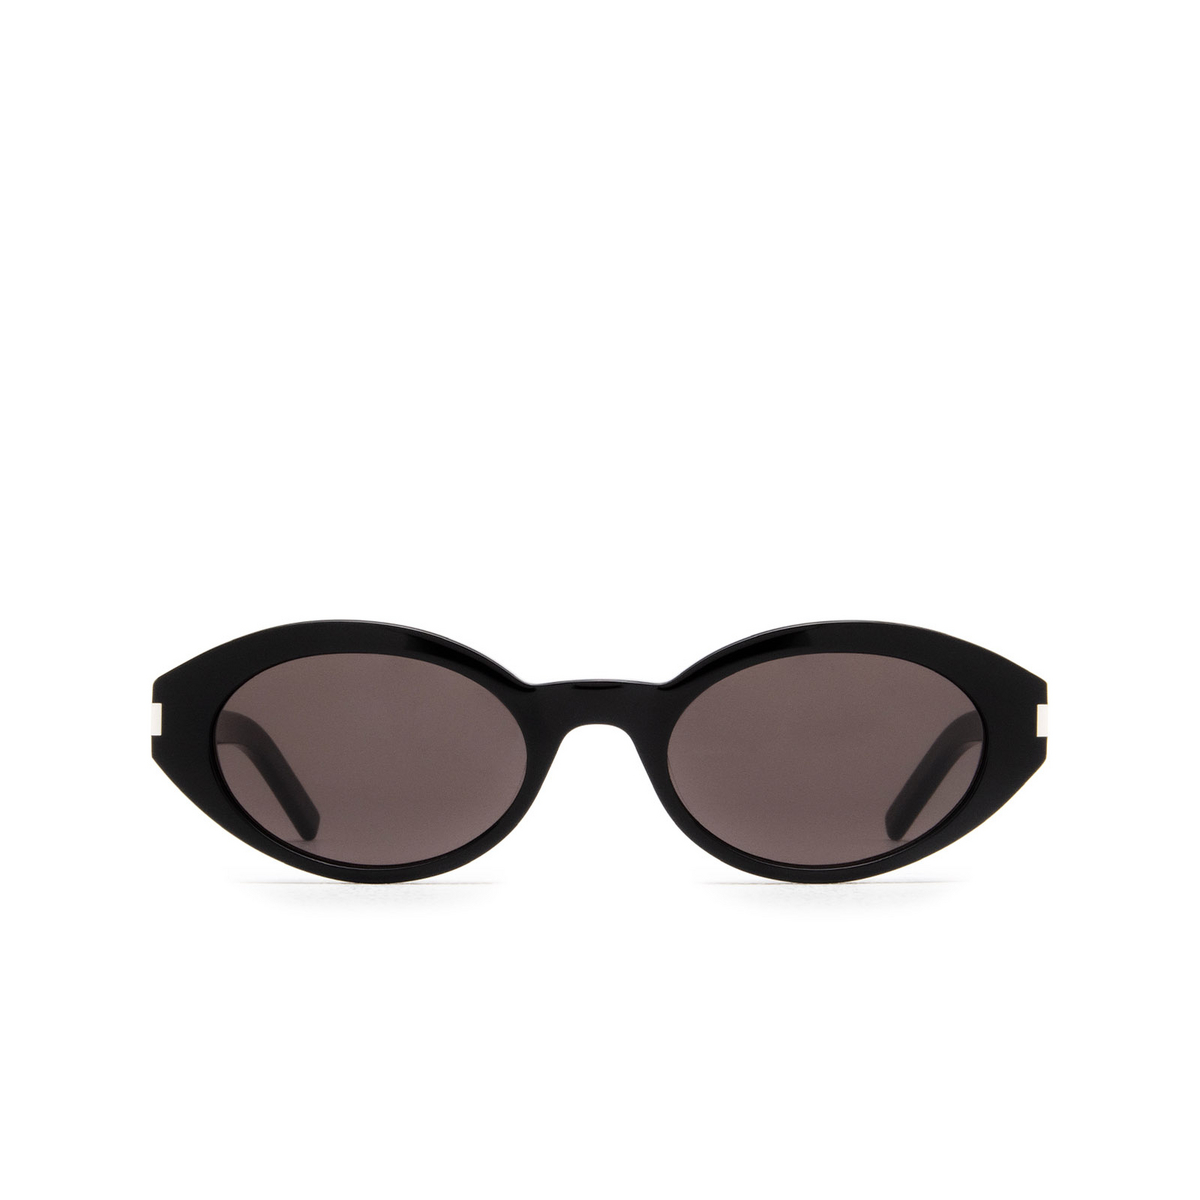 Saint Laurent SL 567 Sunglasses 001 Black - front view